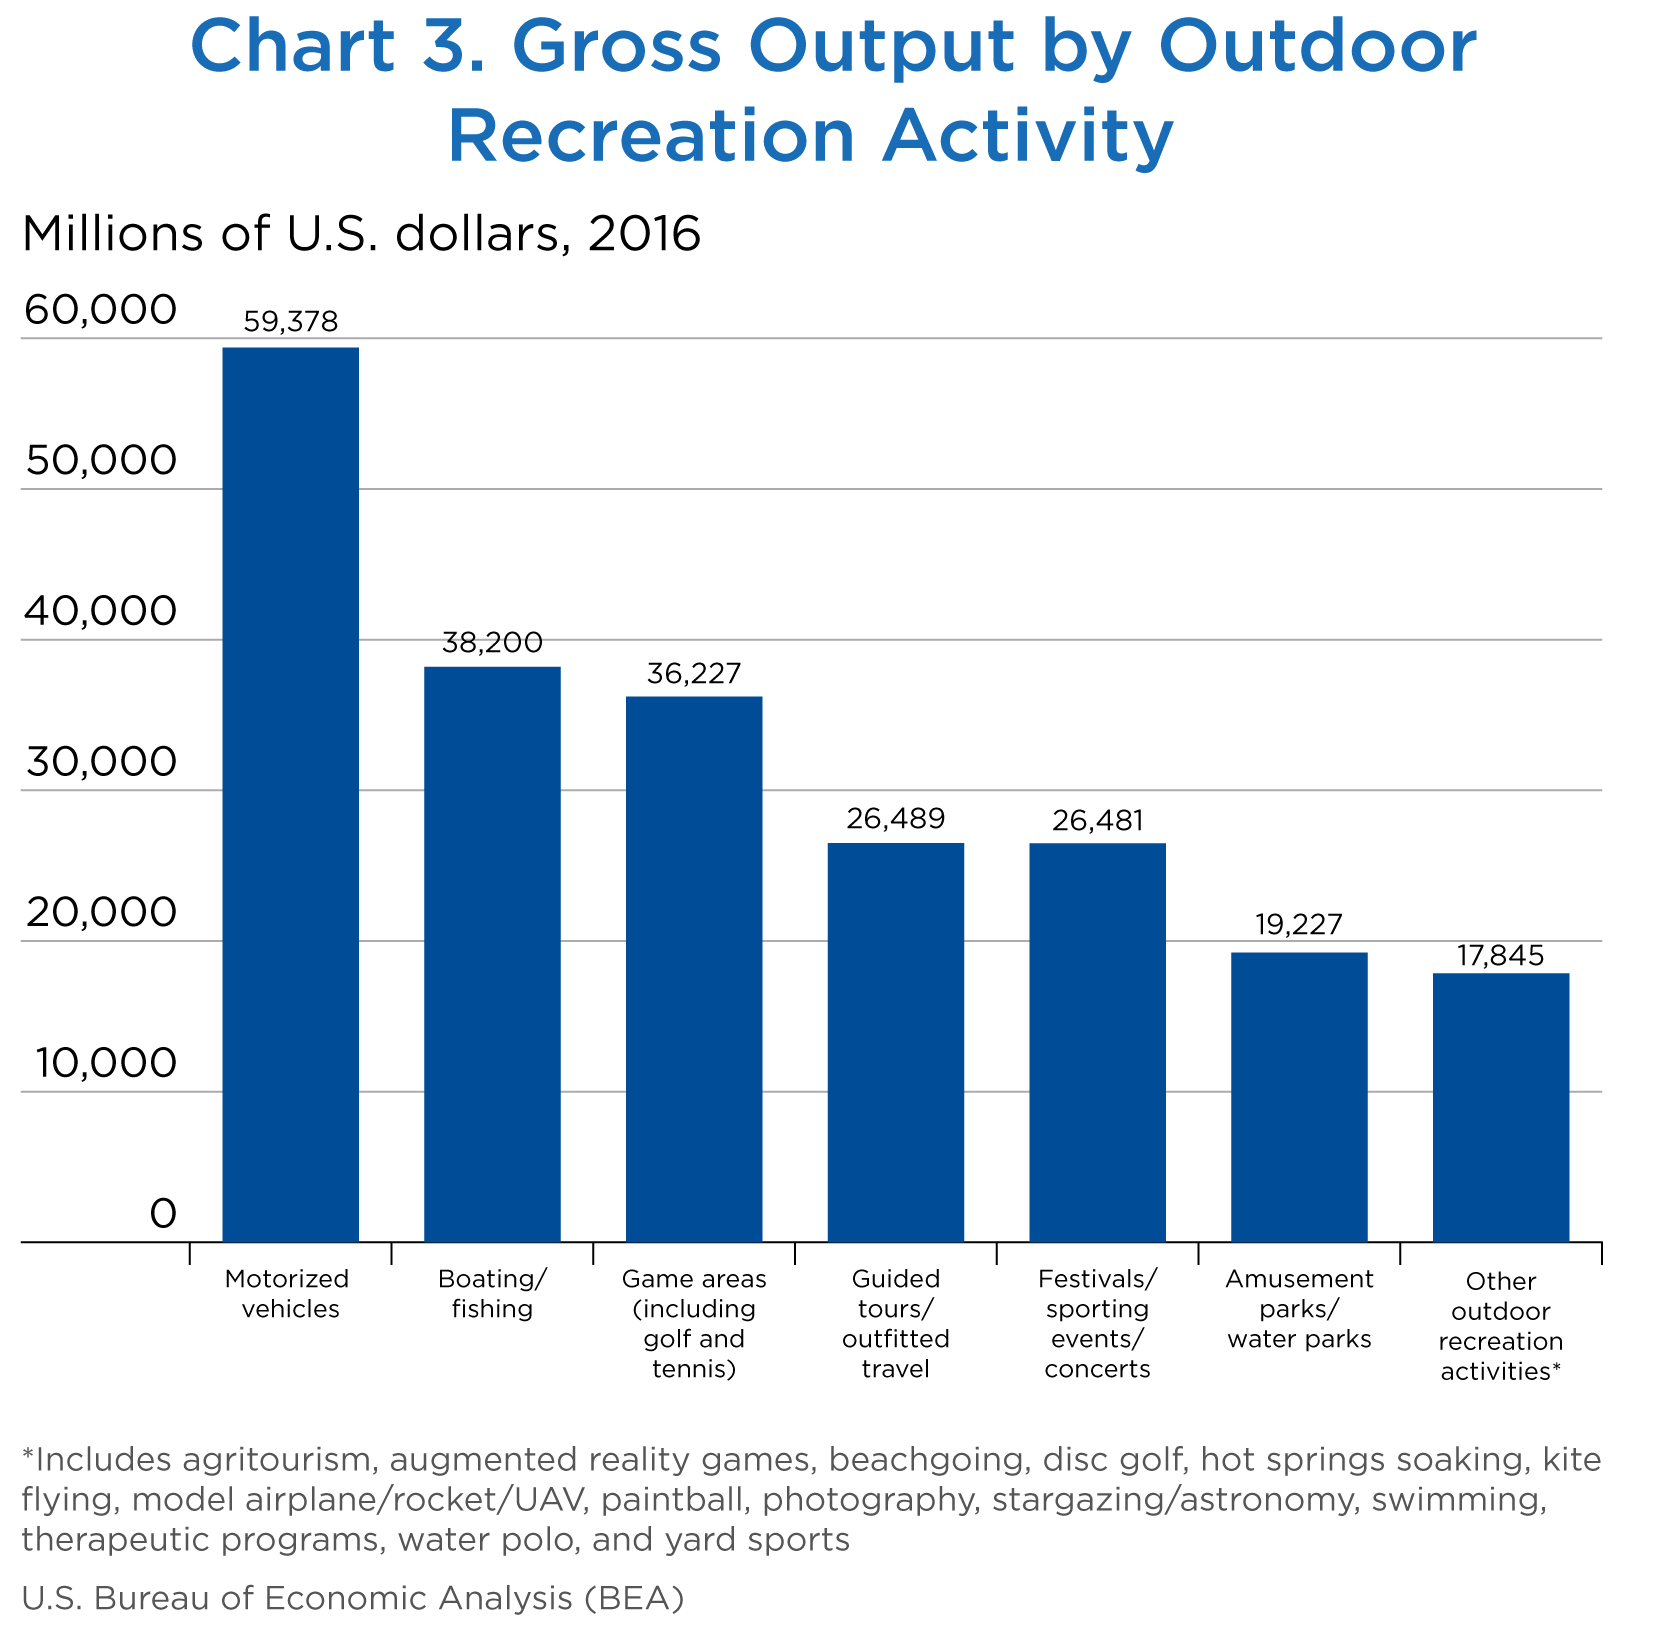 Chart 3. Gross Output by Outdoor Recreation Activity, Bar Chart